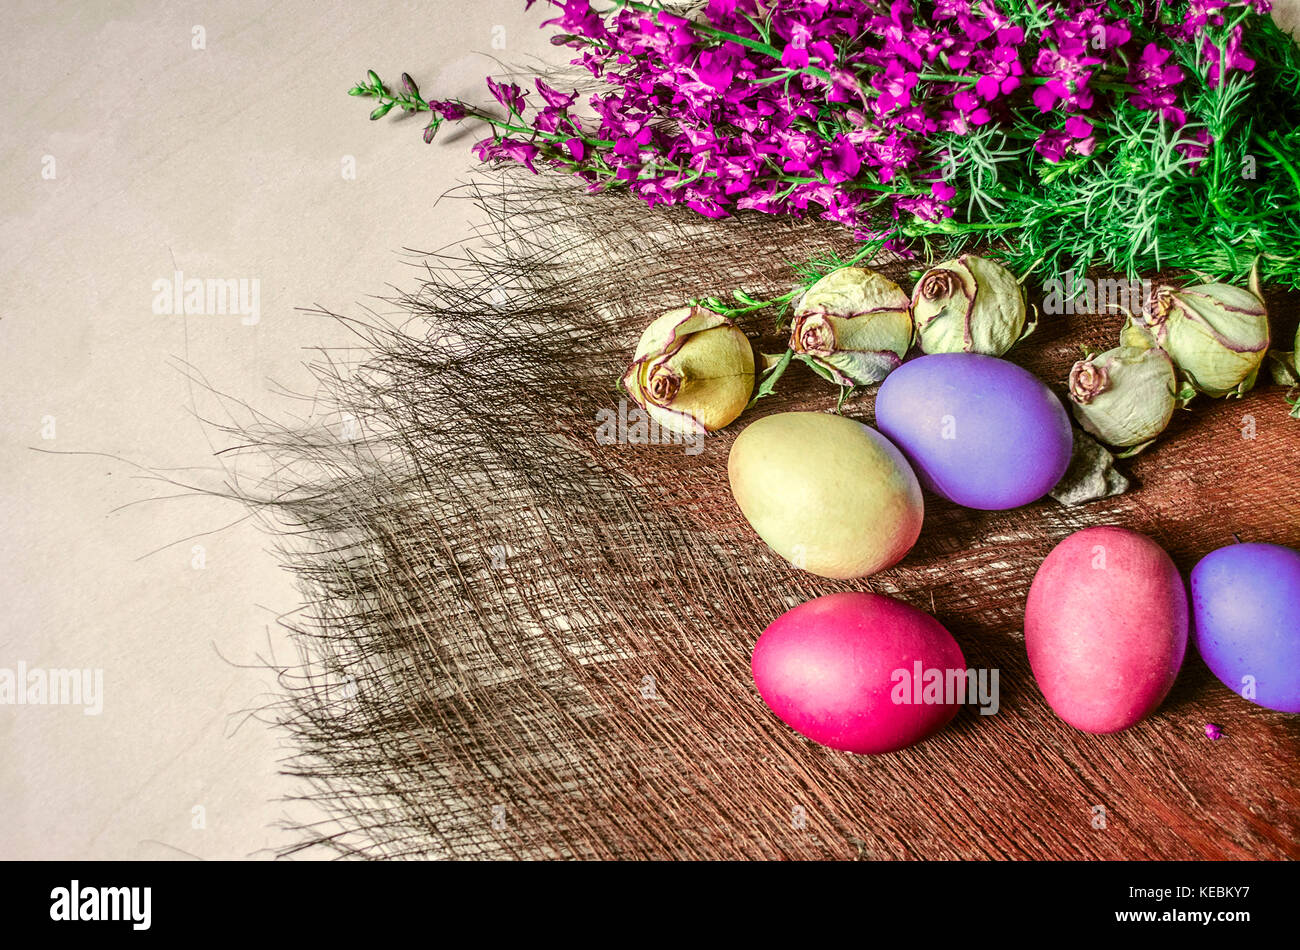 Huevos de pascua de colores brillantes cerca del ramo de flores silvestres y capullos secos de rosas en un subsuelo de paja Foto de stock